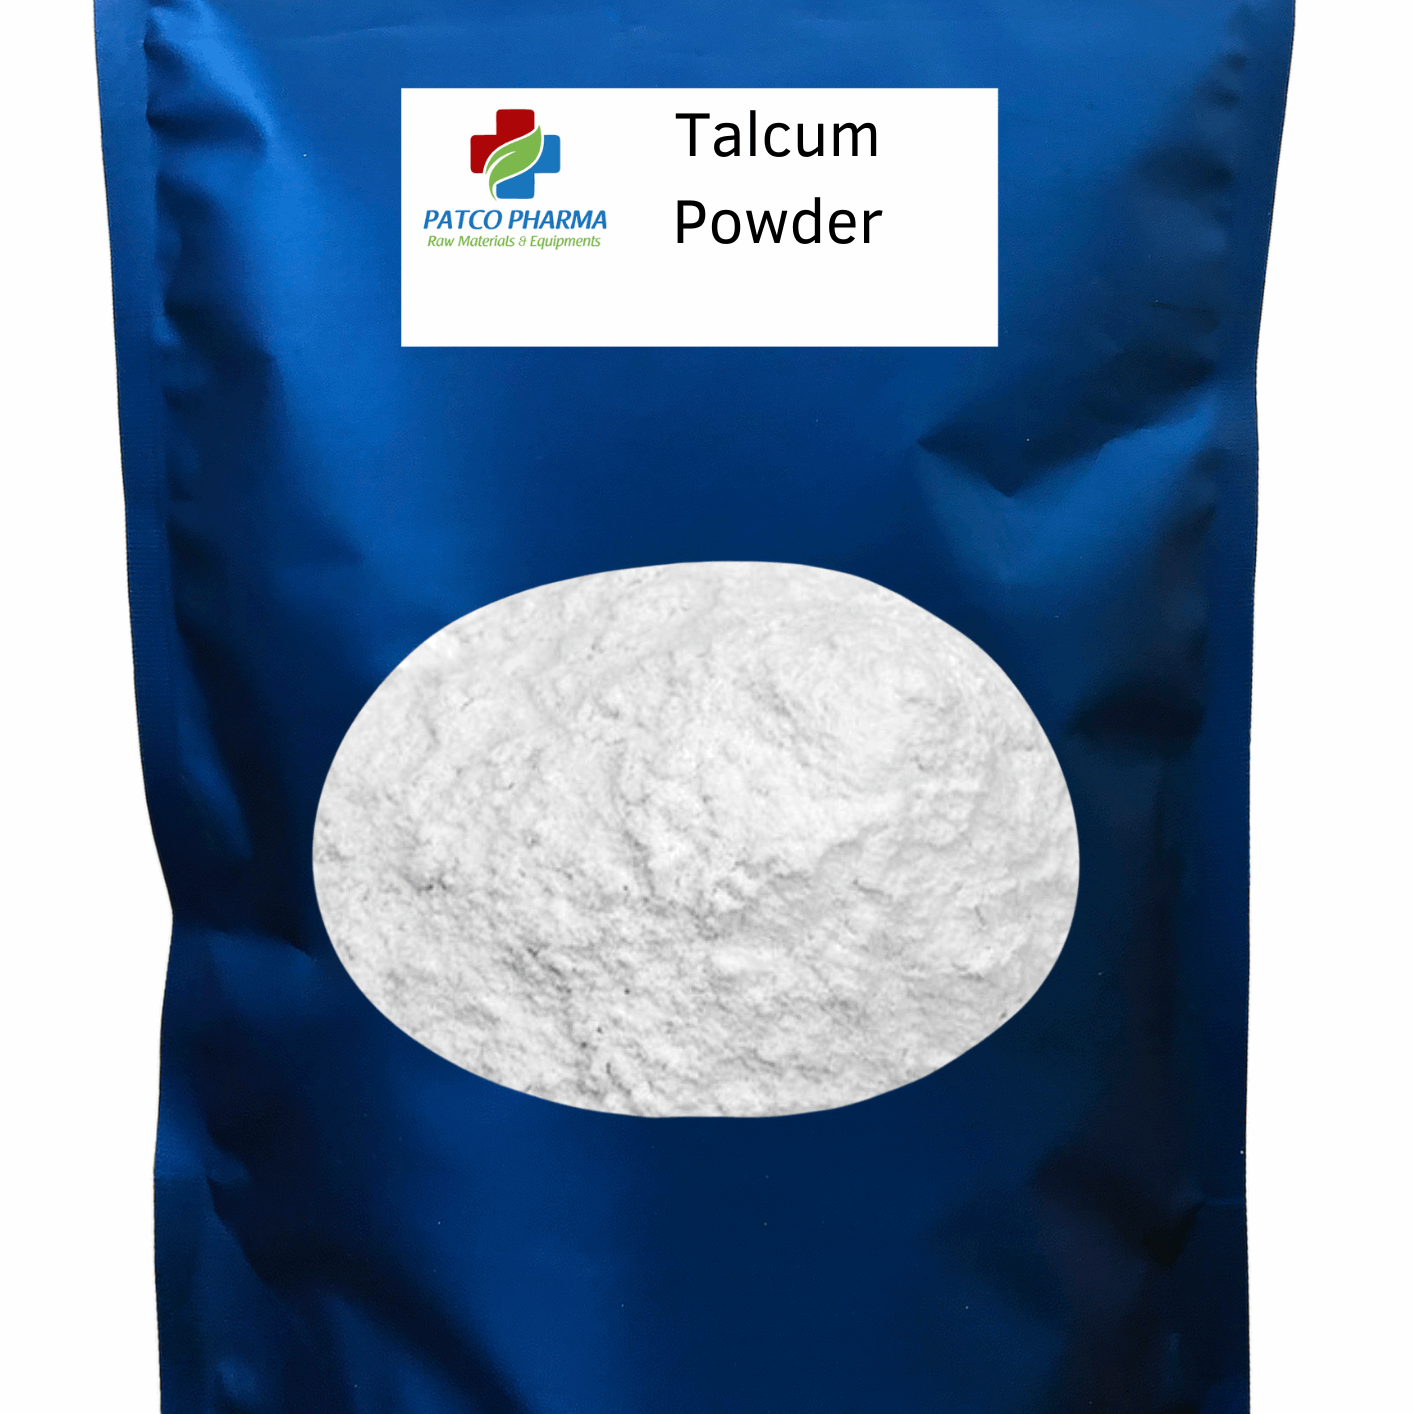 Patco Pharma Talcum Powder, Patco Pharma, API Powders, patco-pharma-talcum-powder-powder, Talcum Powder, Patco Pharma